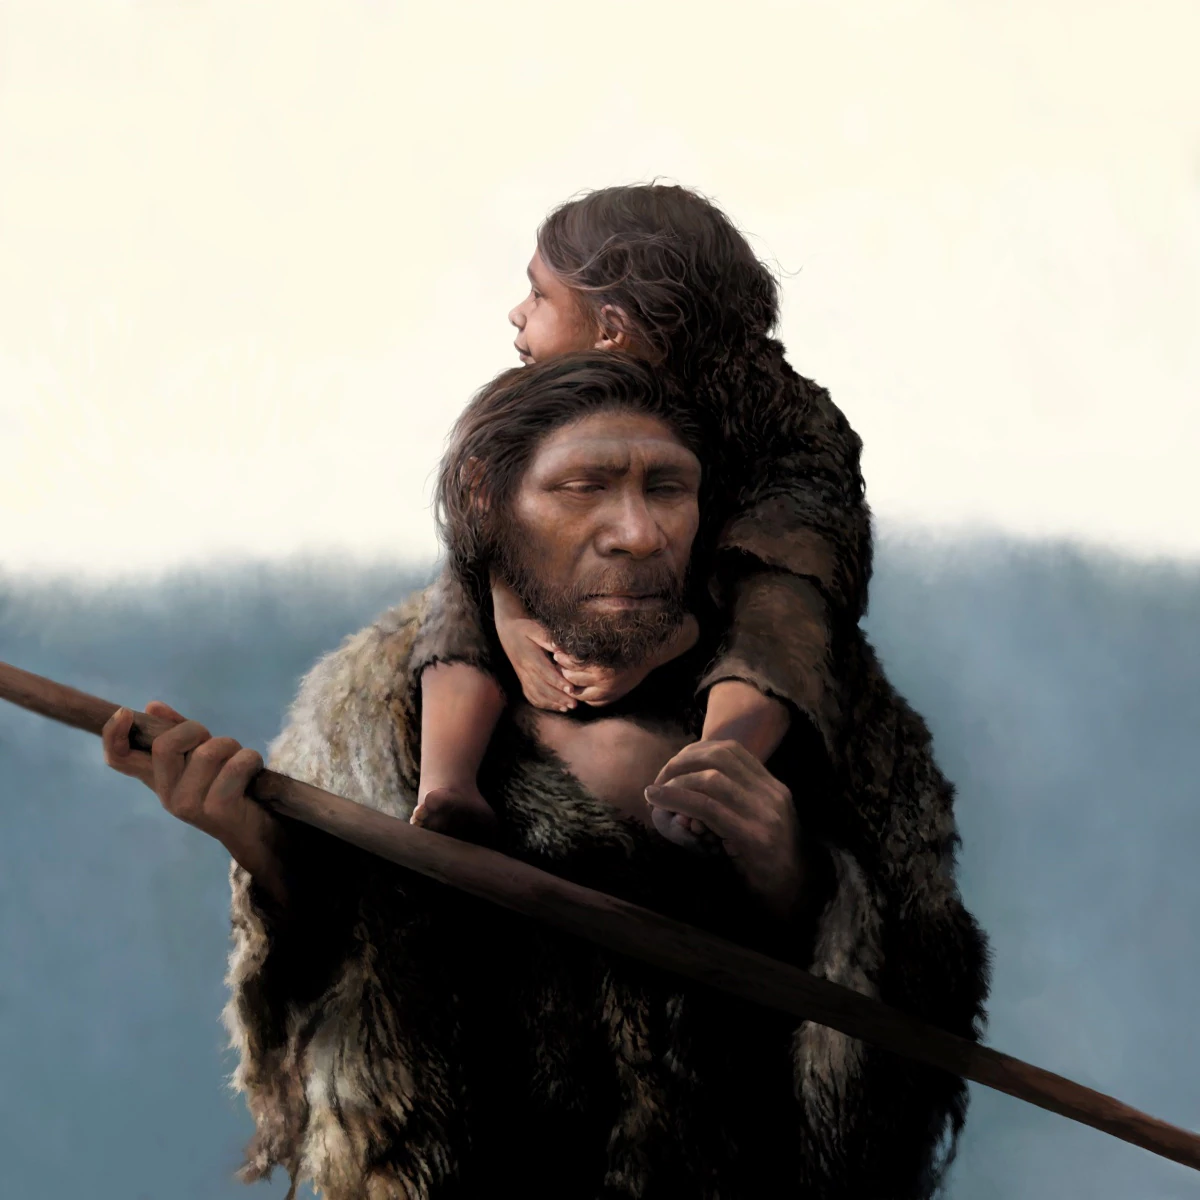 Descubierta la 'familia' más antigua conocida: un padre neandertal con su hija y varios parientes